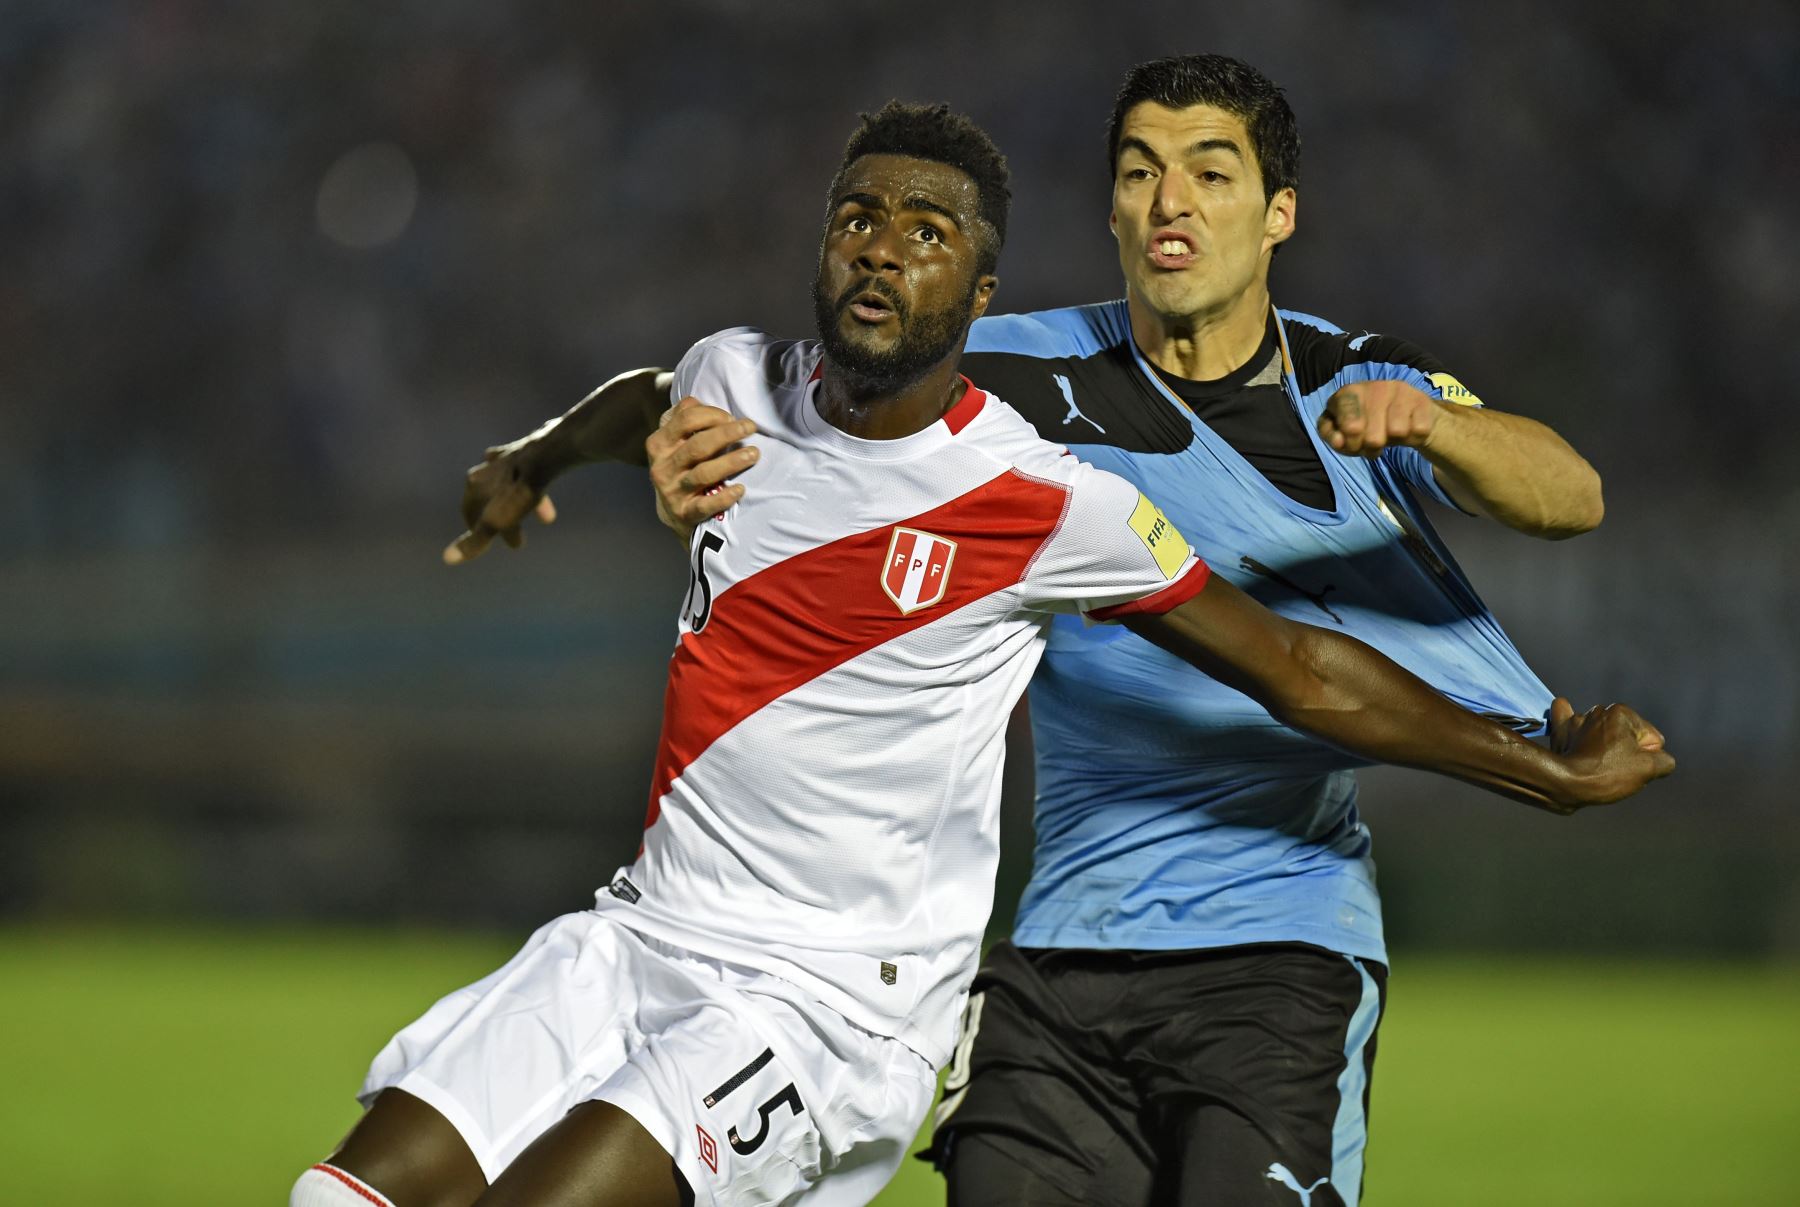 Christian Ramos, futbolista convocado para para el repechaje Catar 2022.
Foto: AFP